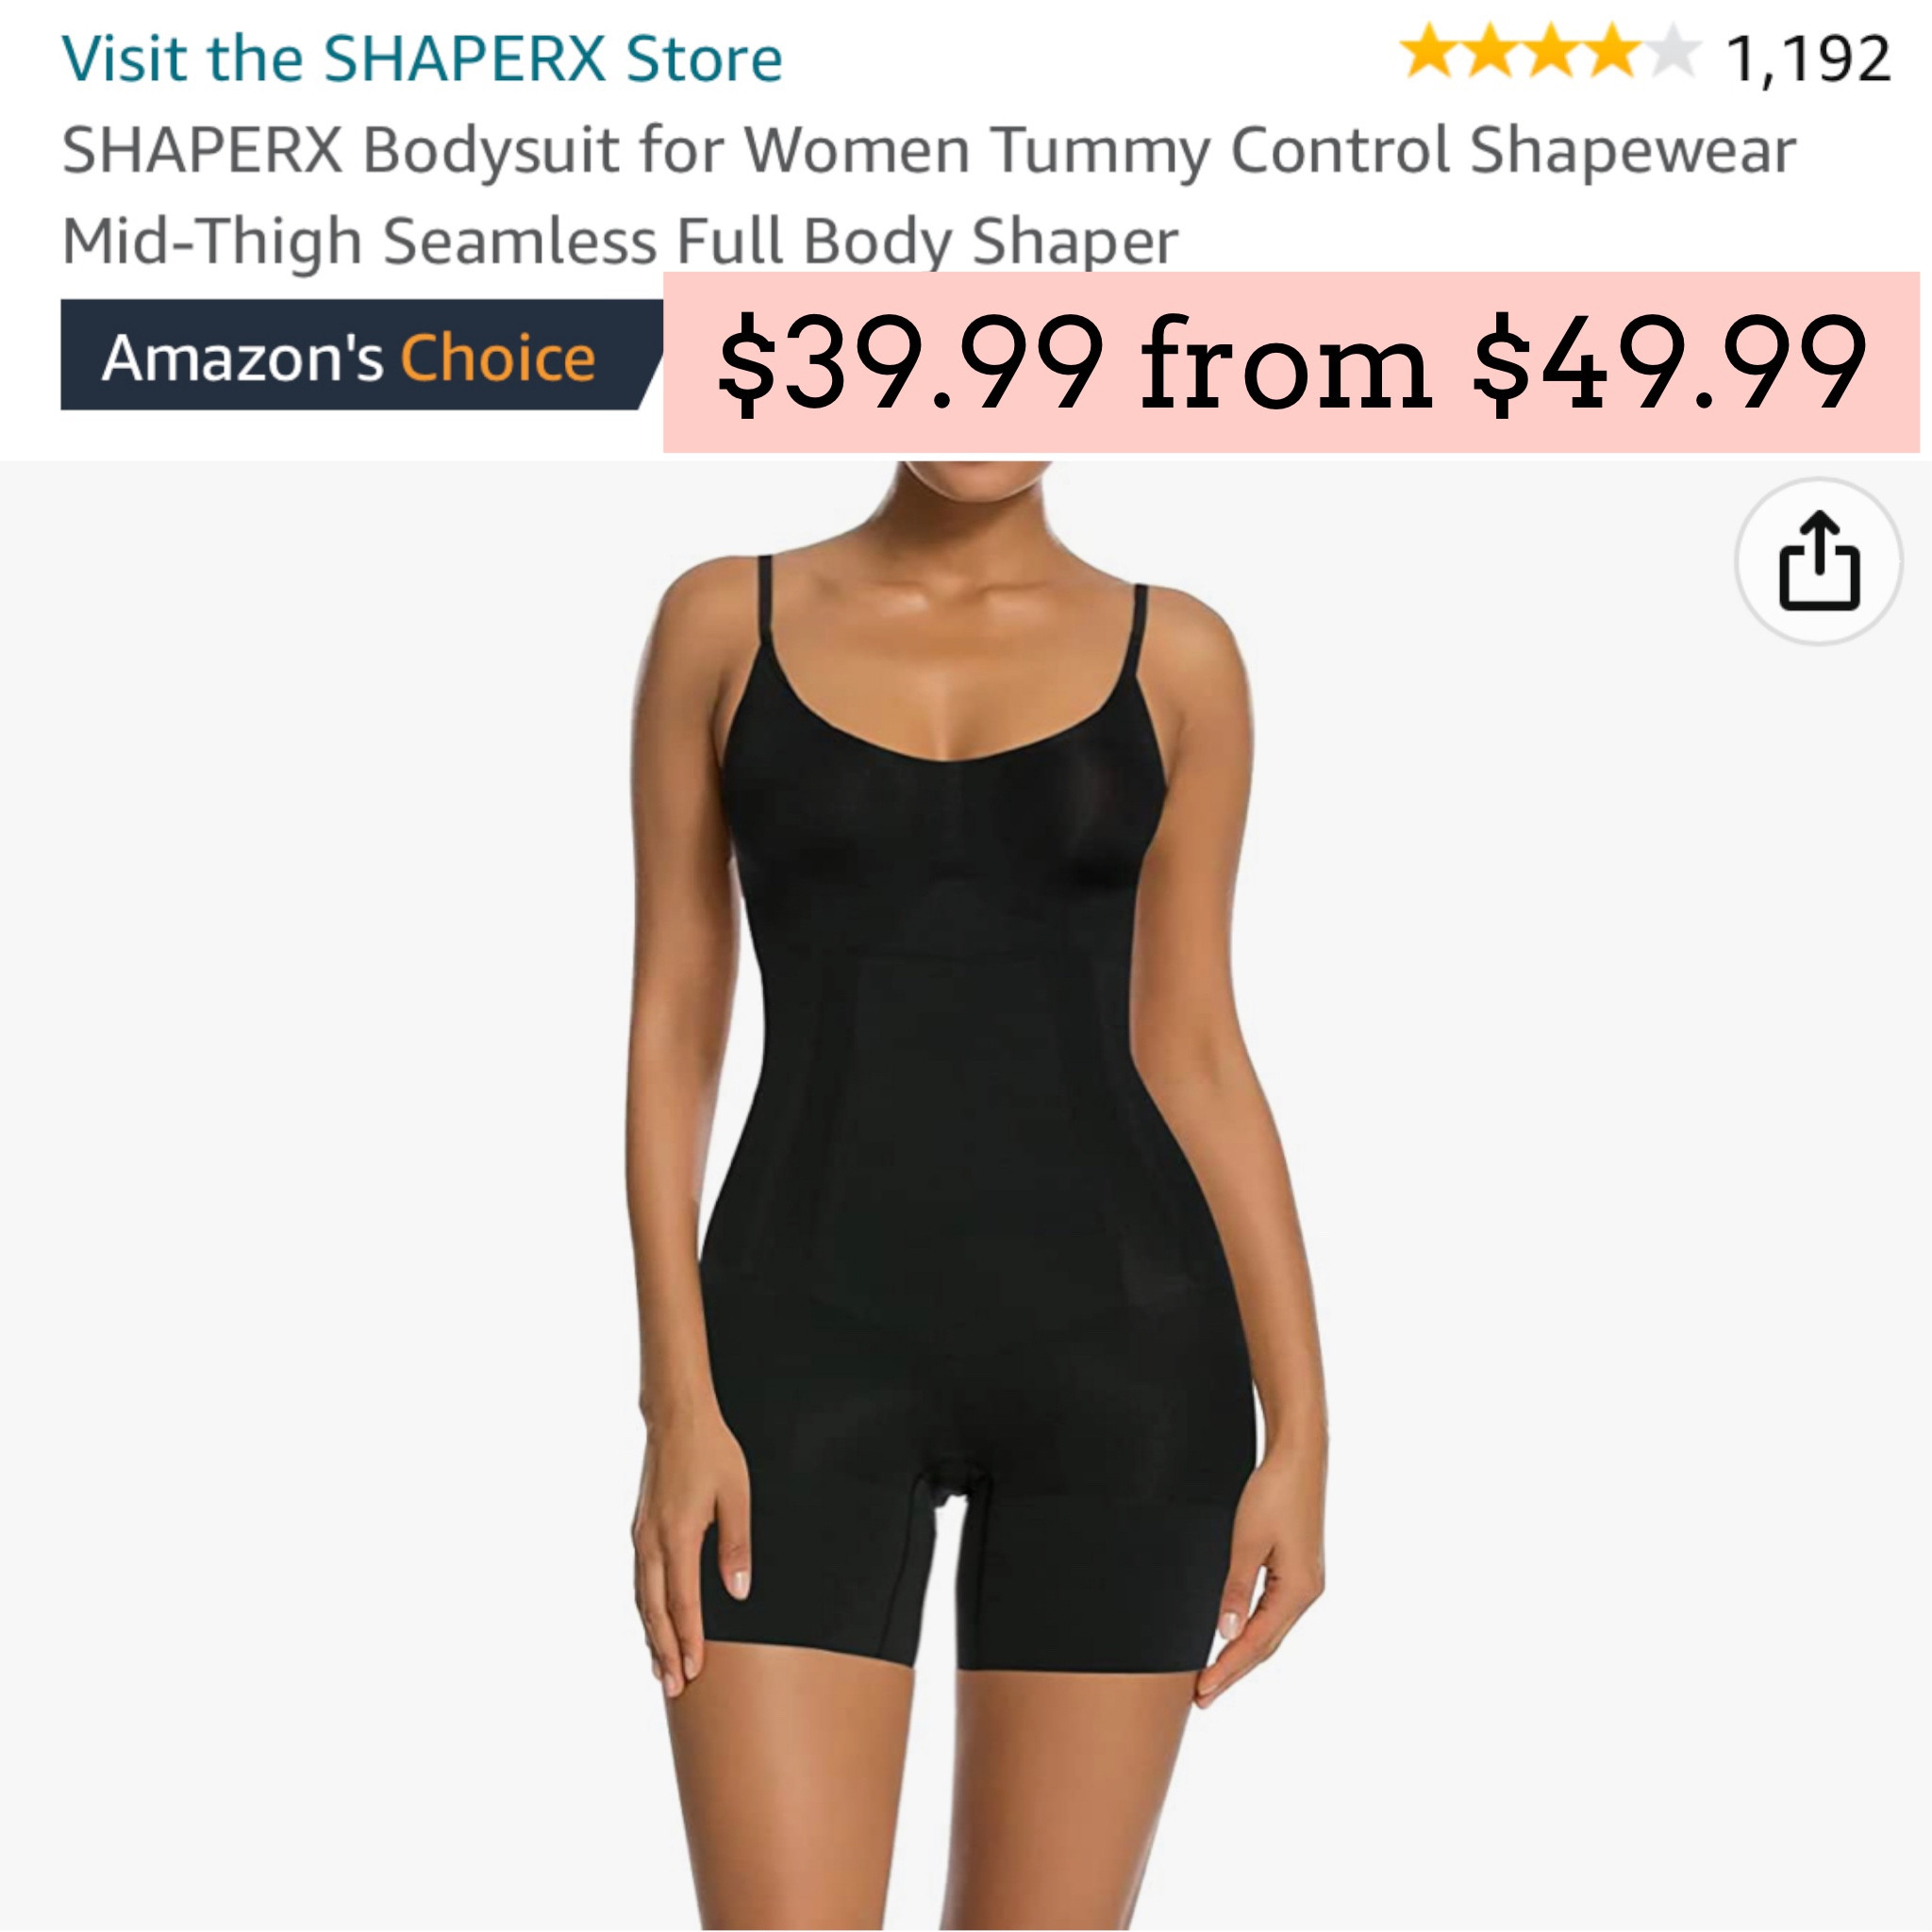 SHAPERX Bodysuit for Women Tummy Control Shapewear Mid-Thigh